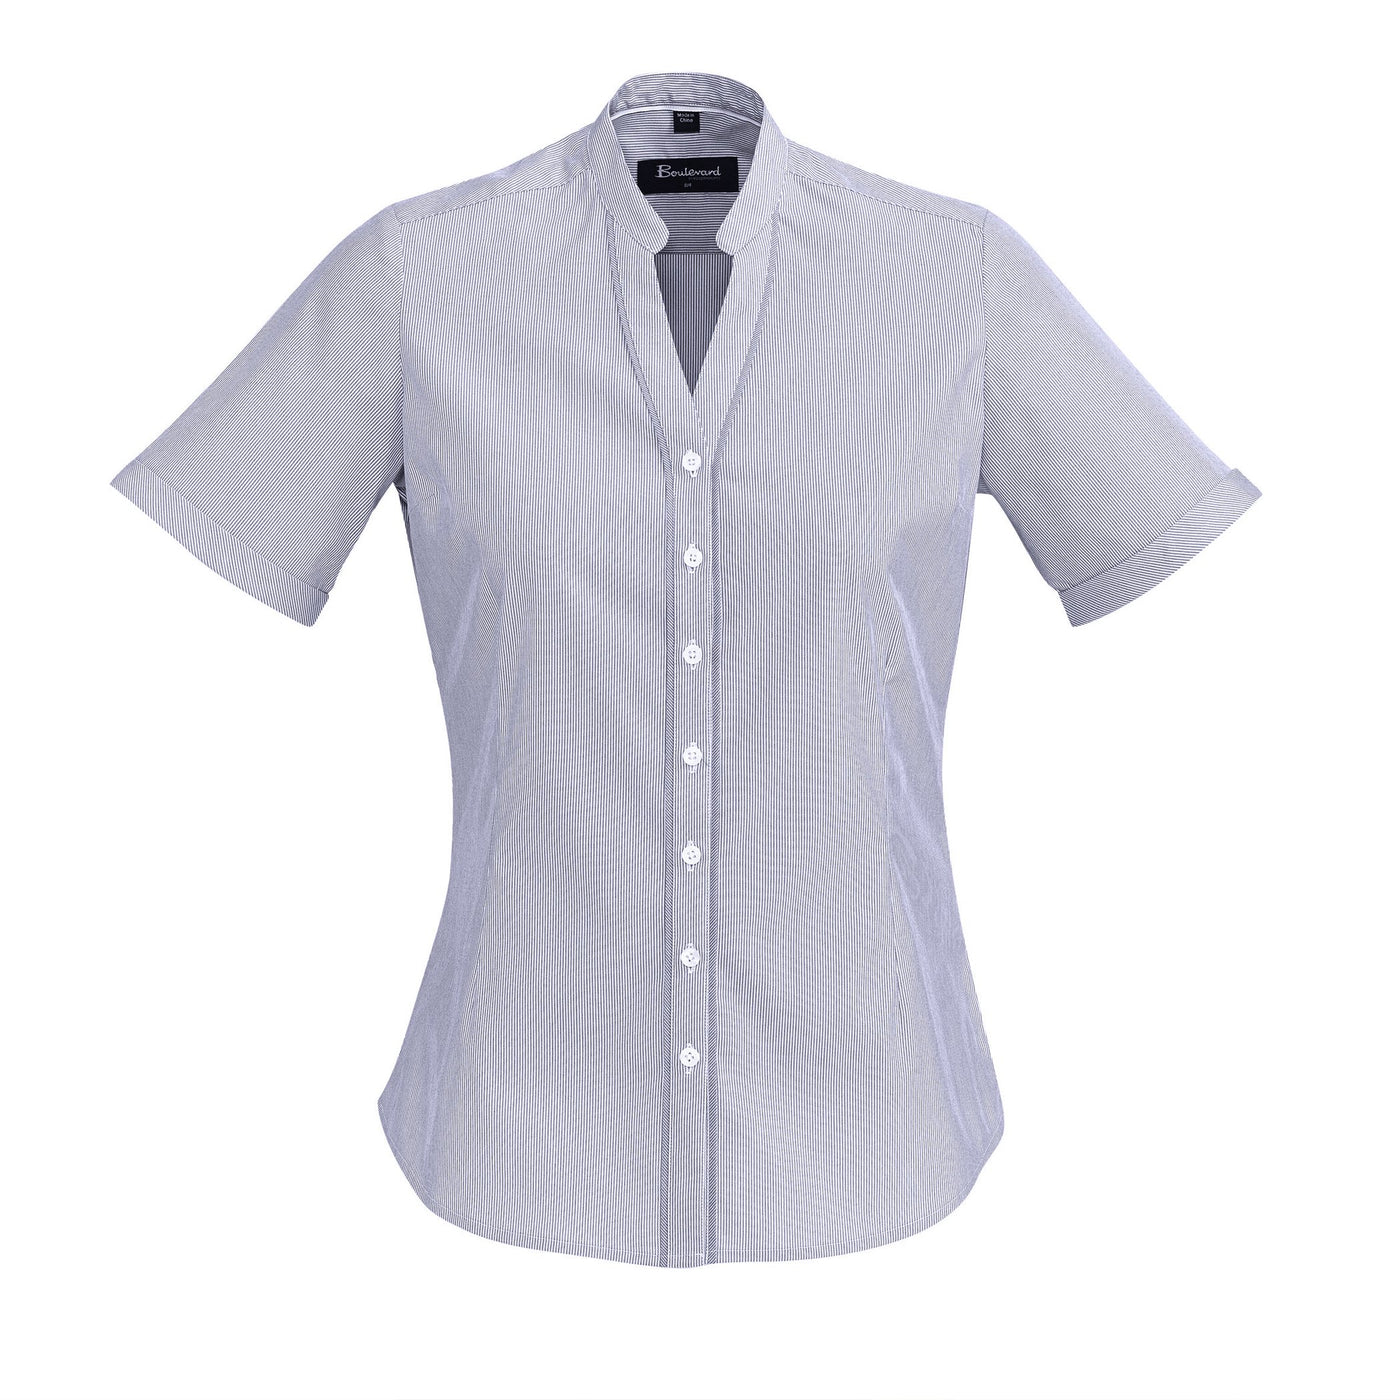 Biz Collection - Bordeaux Ladies Shirt - Short Sleeve